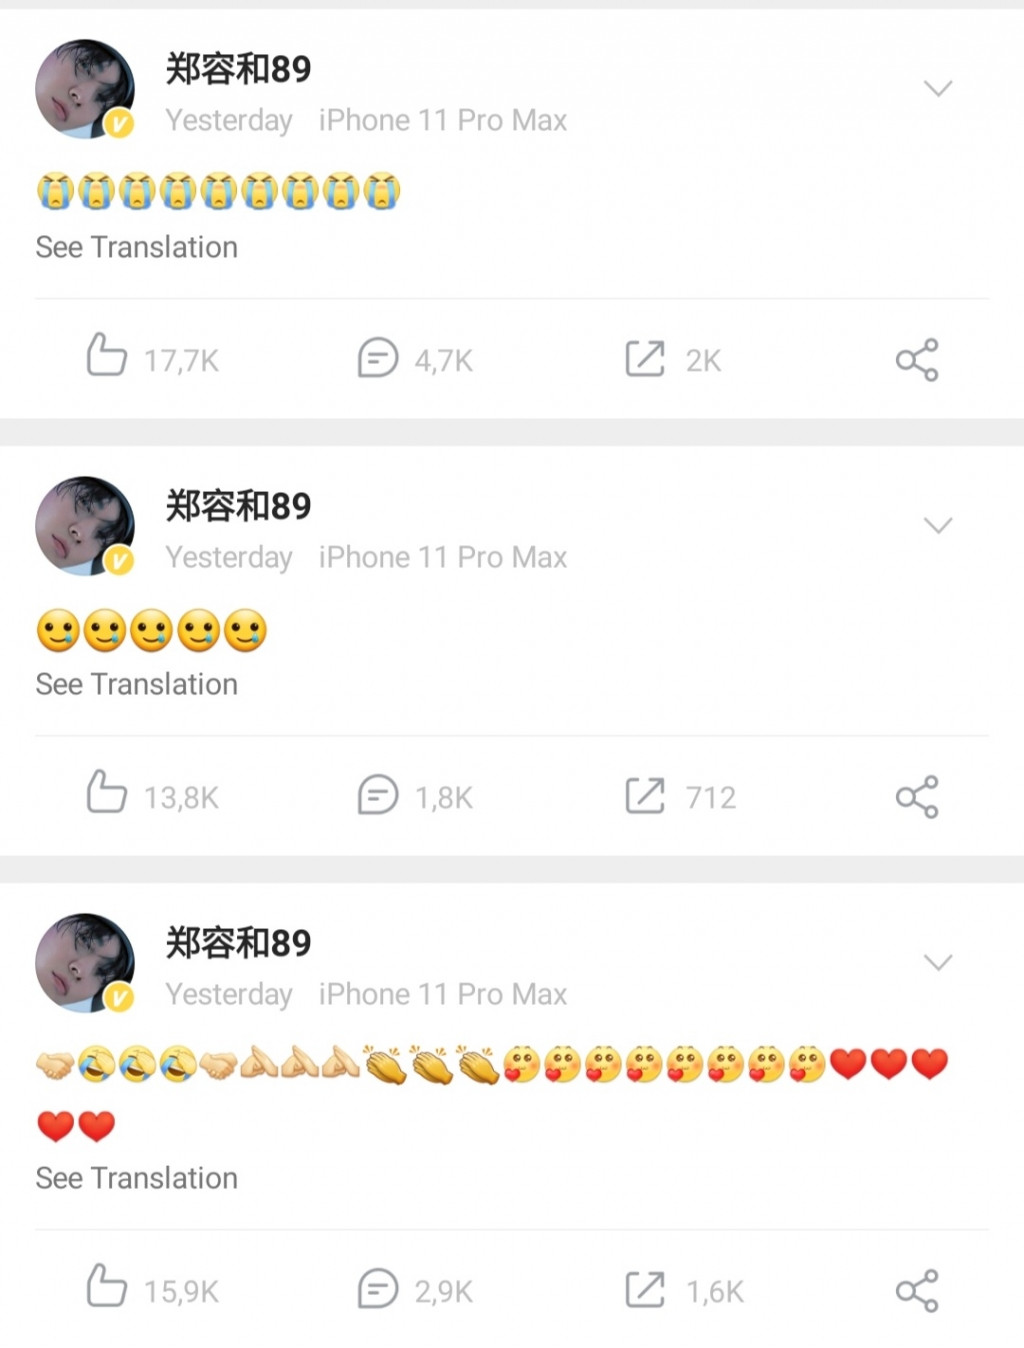 Sao Hàn đồng loạt đăng Weibo, lệnh hạn Hàn được nới lỏng?